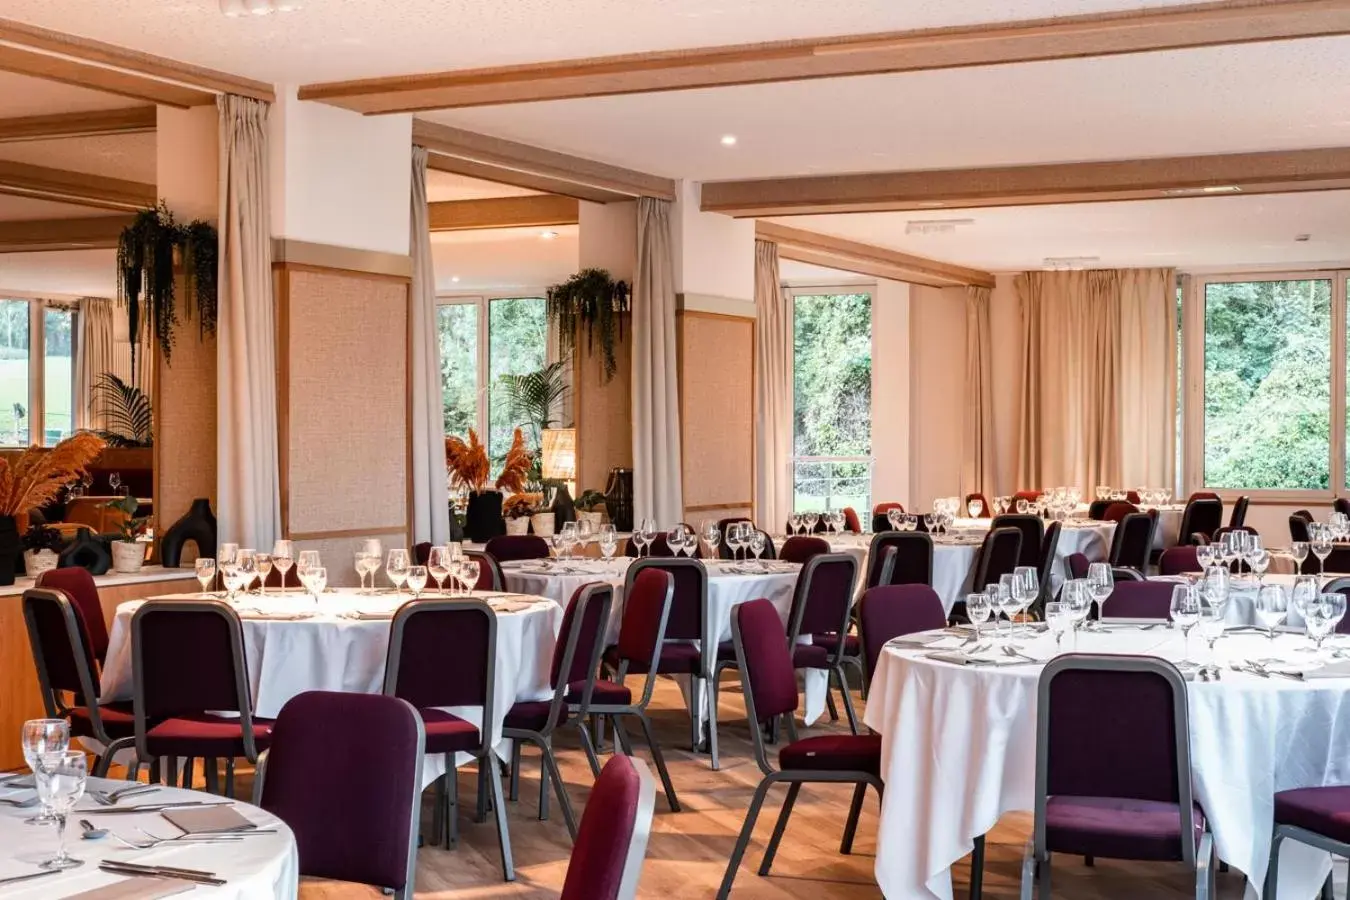 Banquet/Function facilities, Restaurant/Places to Eat in Best Western Plus l'Orée Paris Sud